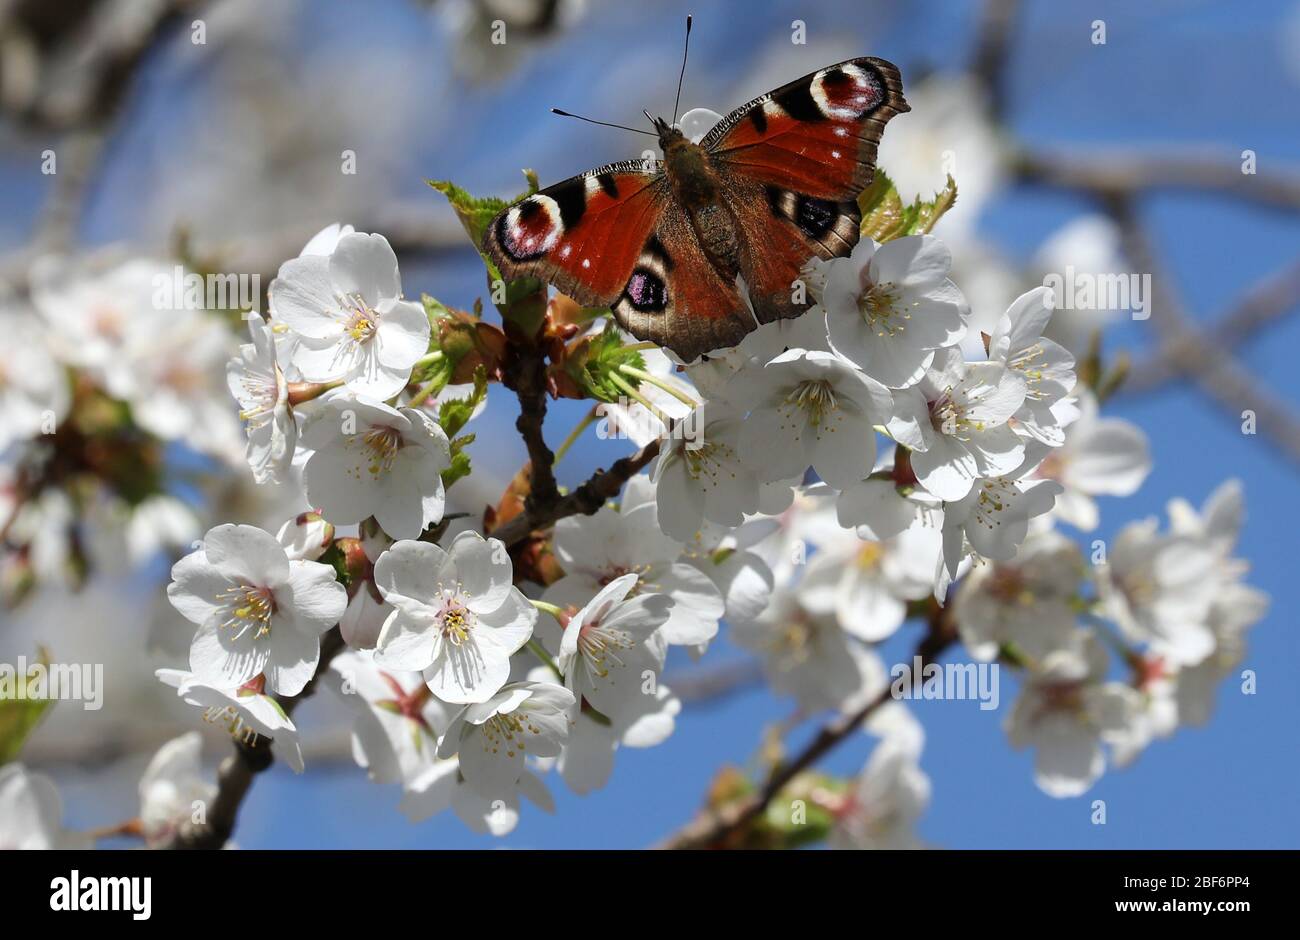 Zingst, Germania. 07 aprile 2020. Un albero fiorisce, una farfalla si è stabilizzata sui fiori. Con il progetto no-profit "Naturgucker", l'Unione per la conservazione della natura e della biodiversità in Germania (NABU) sta attualmente incoraggiando le osservazioni di piante e animali nel paesaggio. Sul portale Internet Naturgucker, gli osservatori possono segnalare i loro avvistamenti dal selvaggio o dal proprio balcone. Credit: Bernd Wüstneck/dpa-Zentralbild/ZB/dpa/Alamy Live News Foto Stock